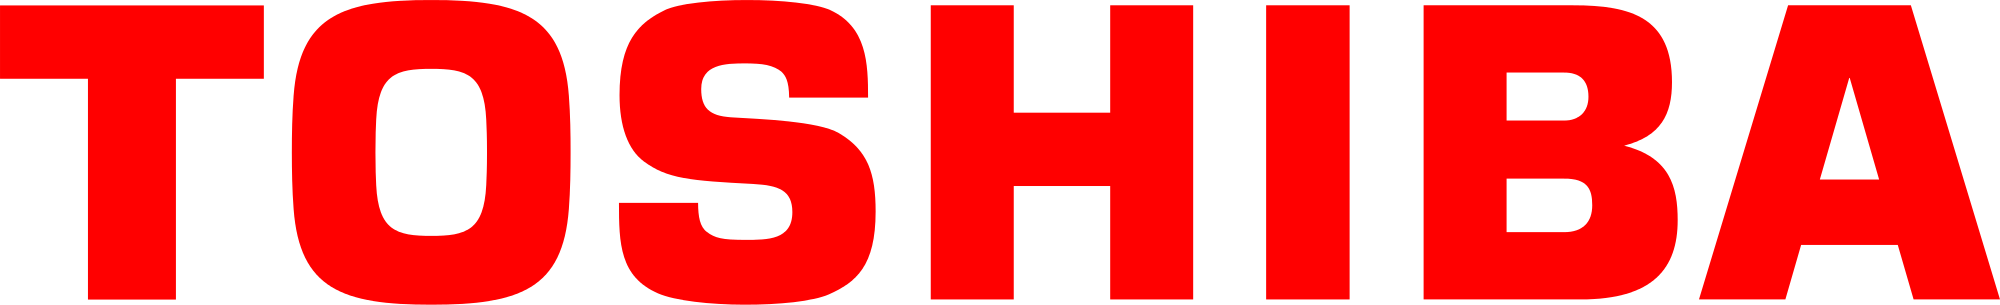 Toshiba_logo.svg.png